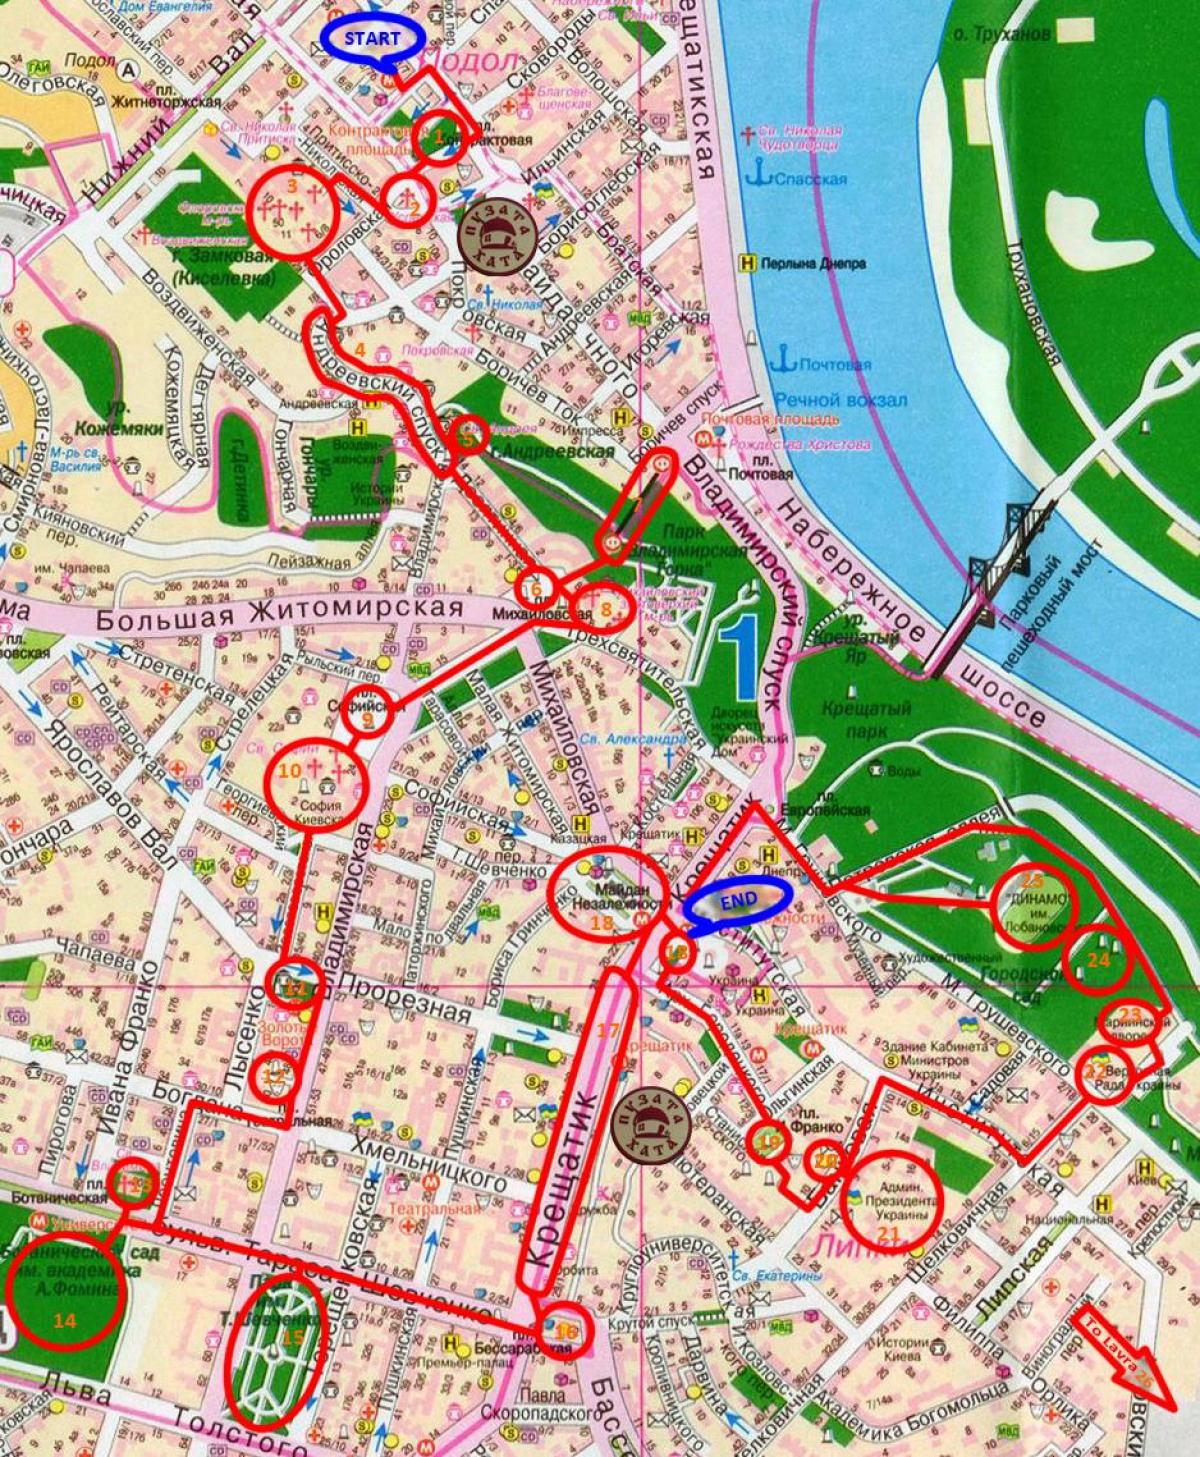 Mapa dos passeios a pé em Kiev